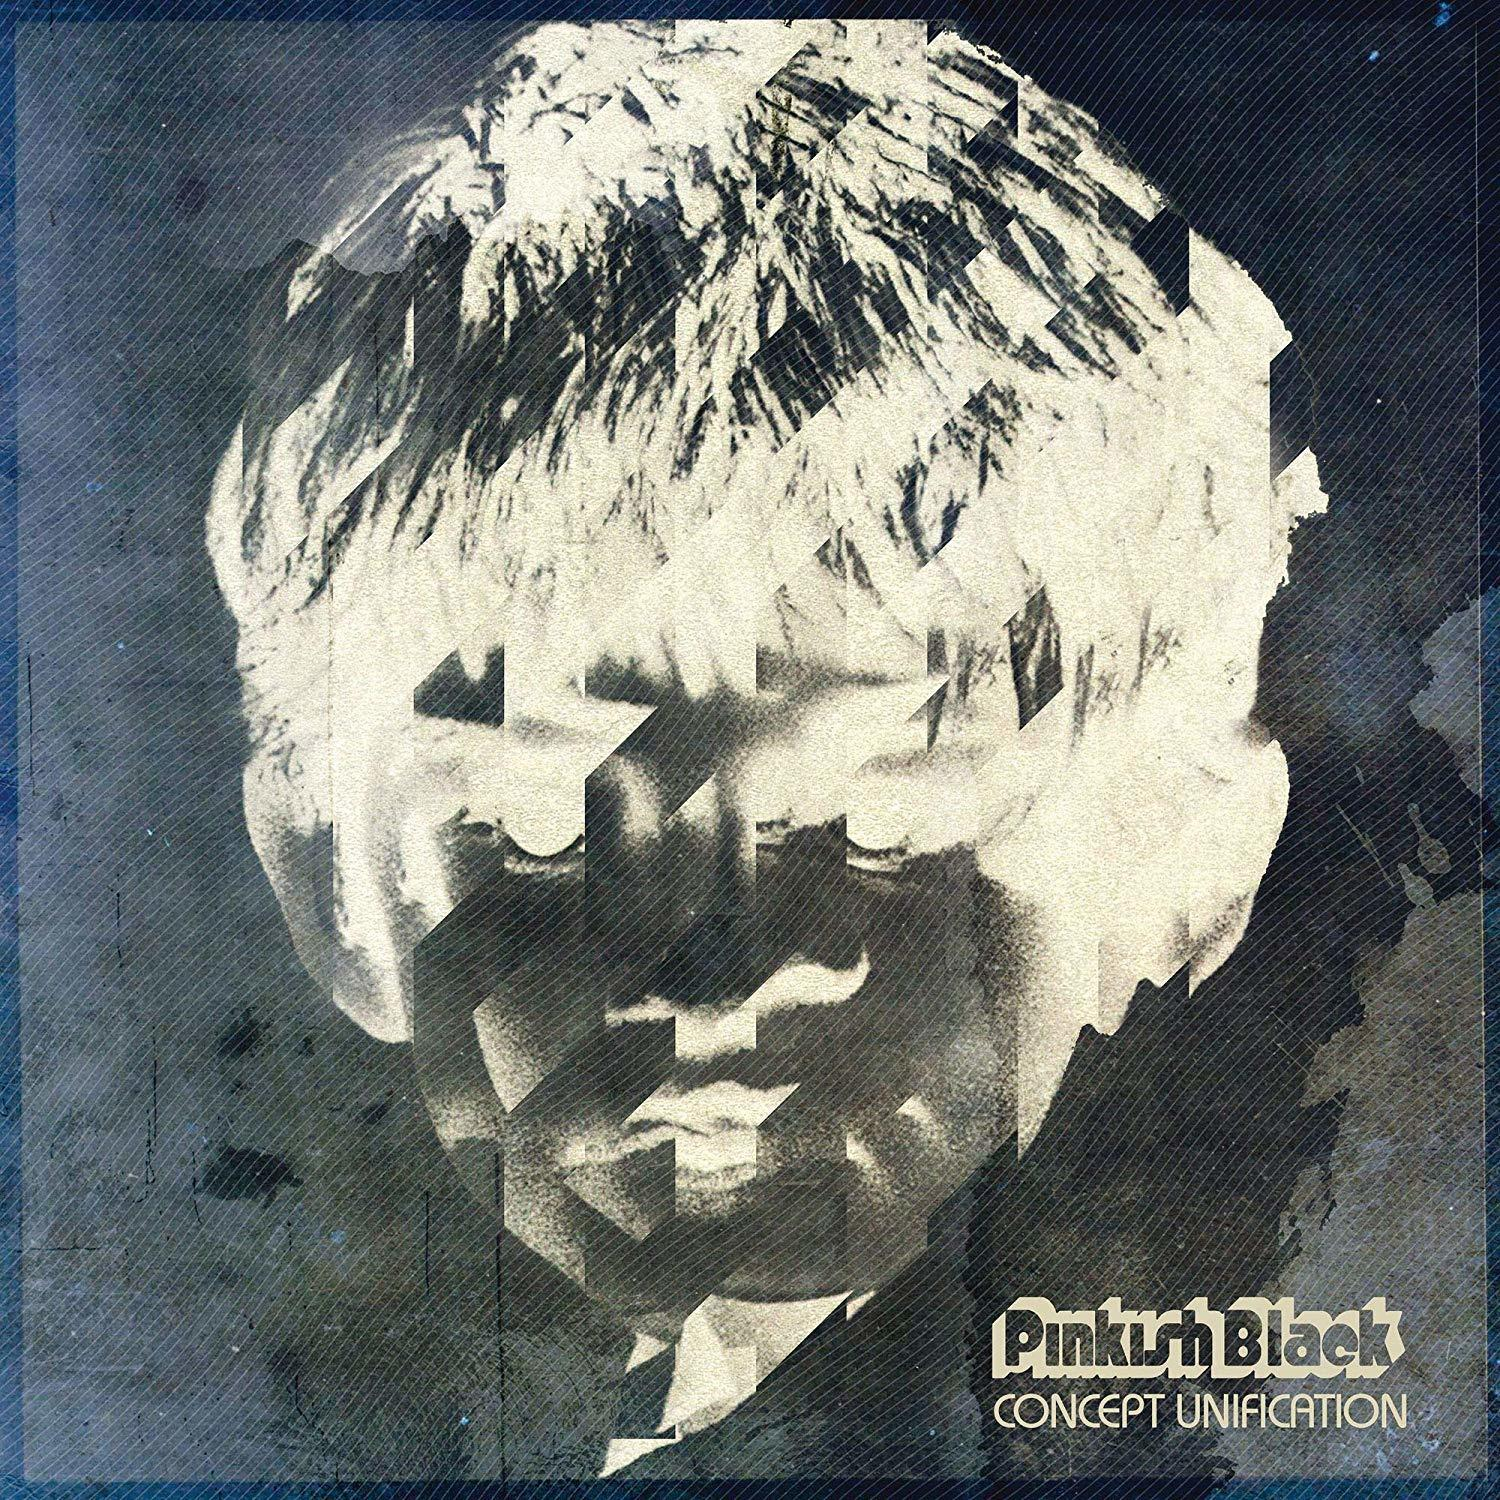 Pinkish Black - Concept Unification (Vinyl) (LP+MP3) 